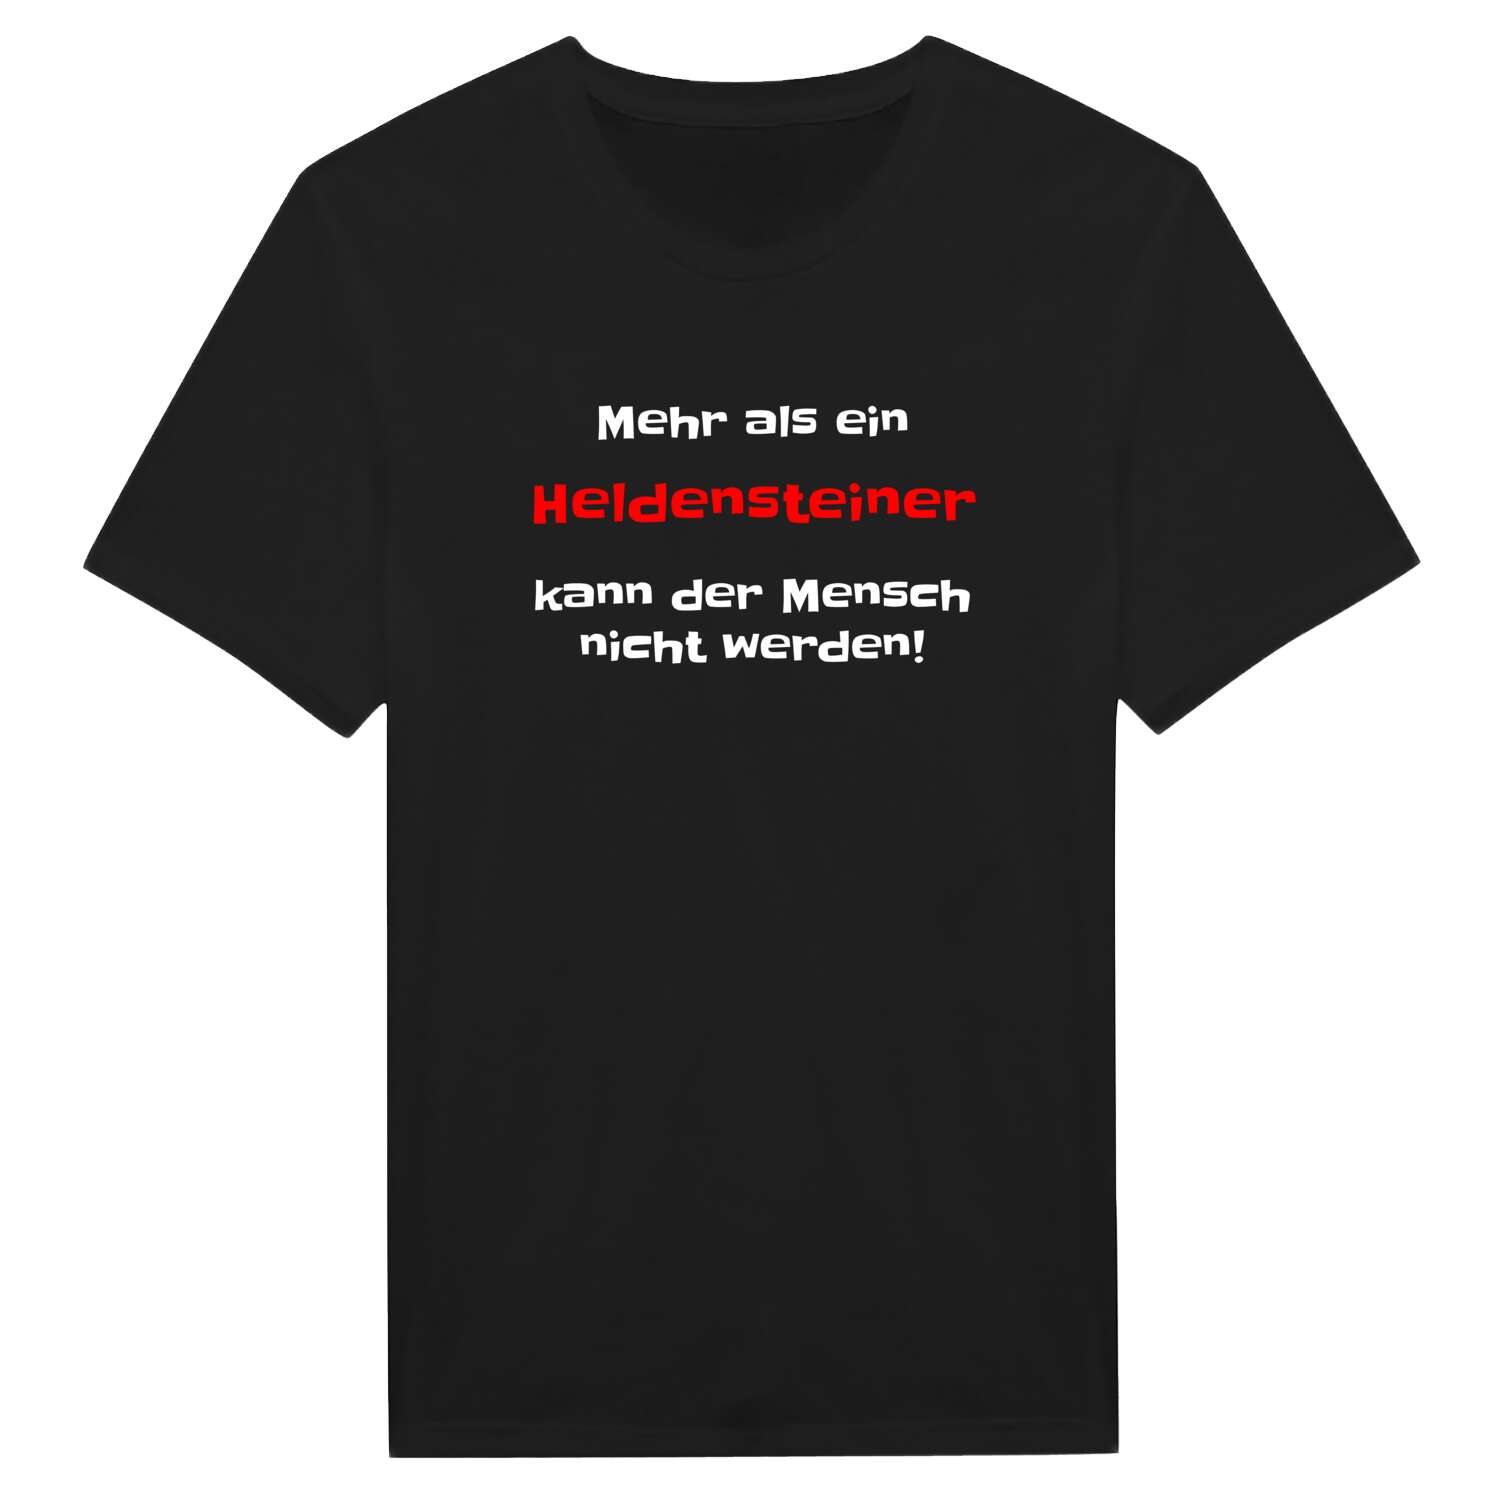 Heldenstein T-Shirt »Mehr als ein«